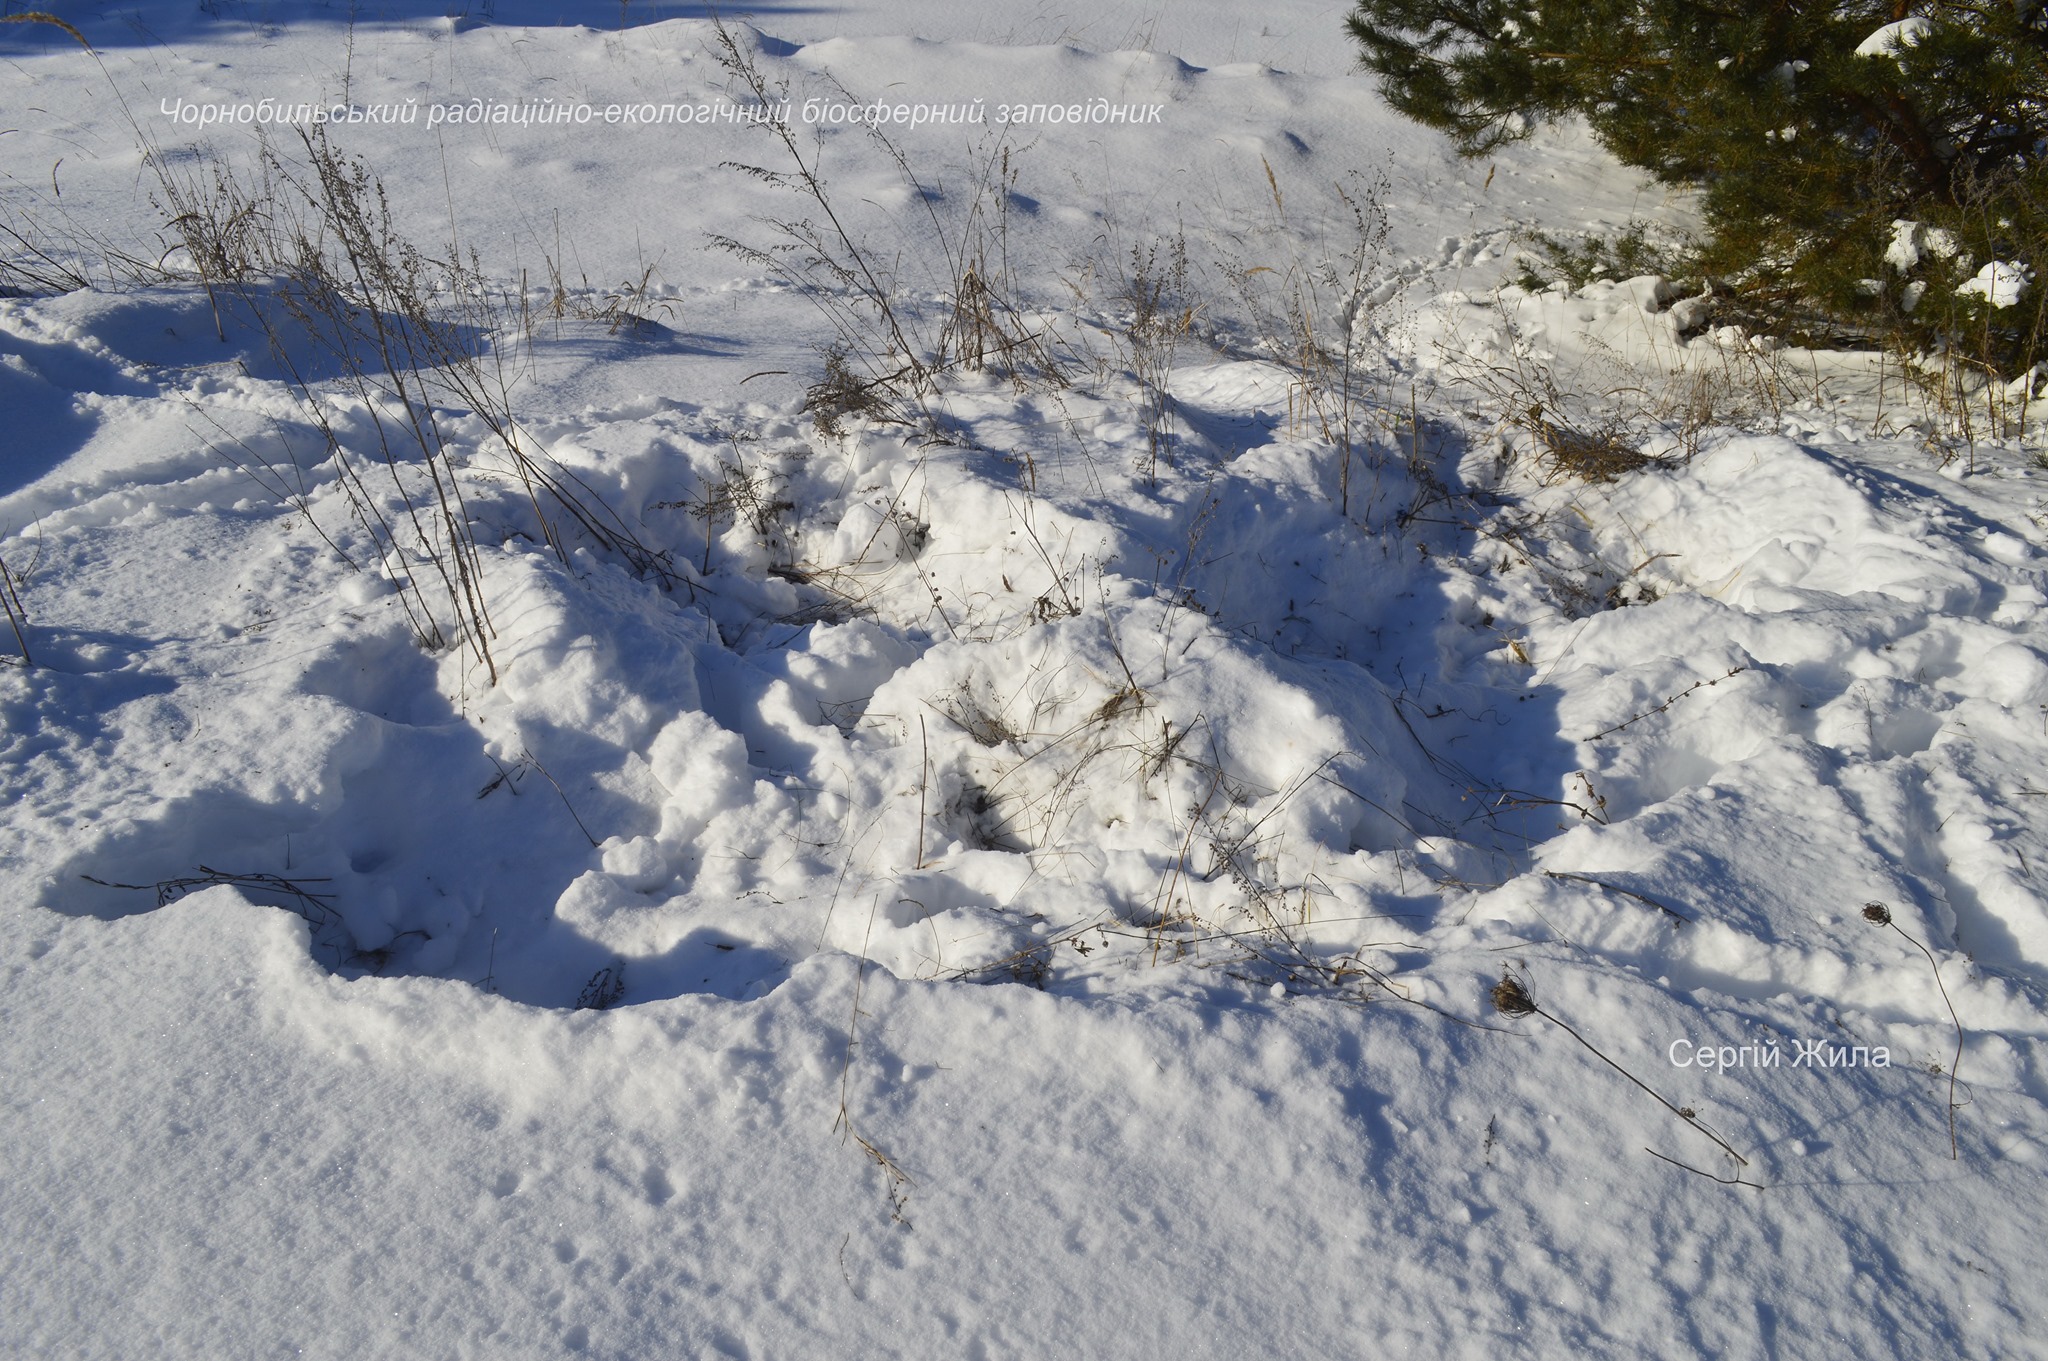 Вото: коровы стараются добраться до травы, копая снег мордой